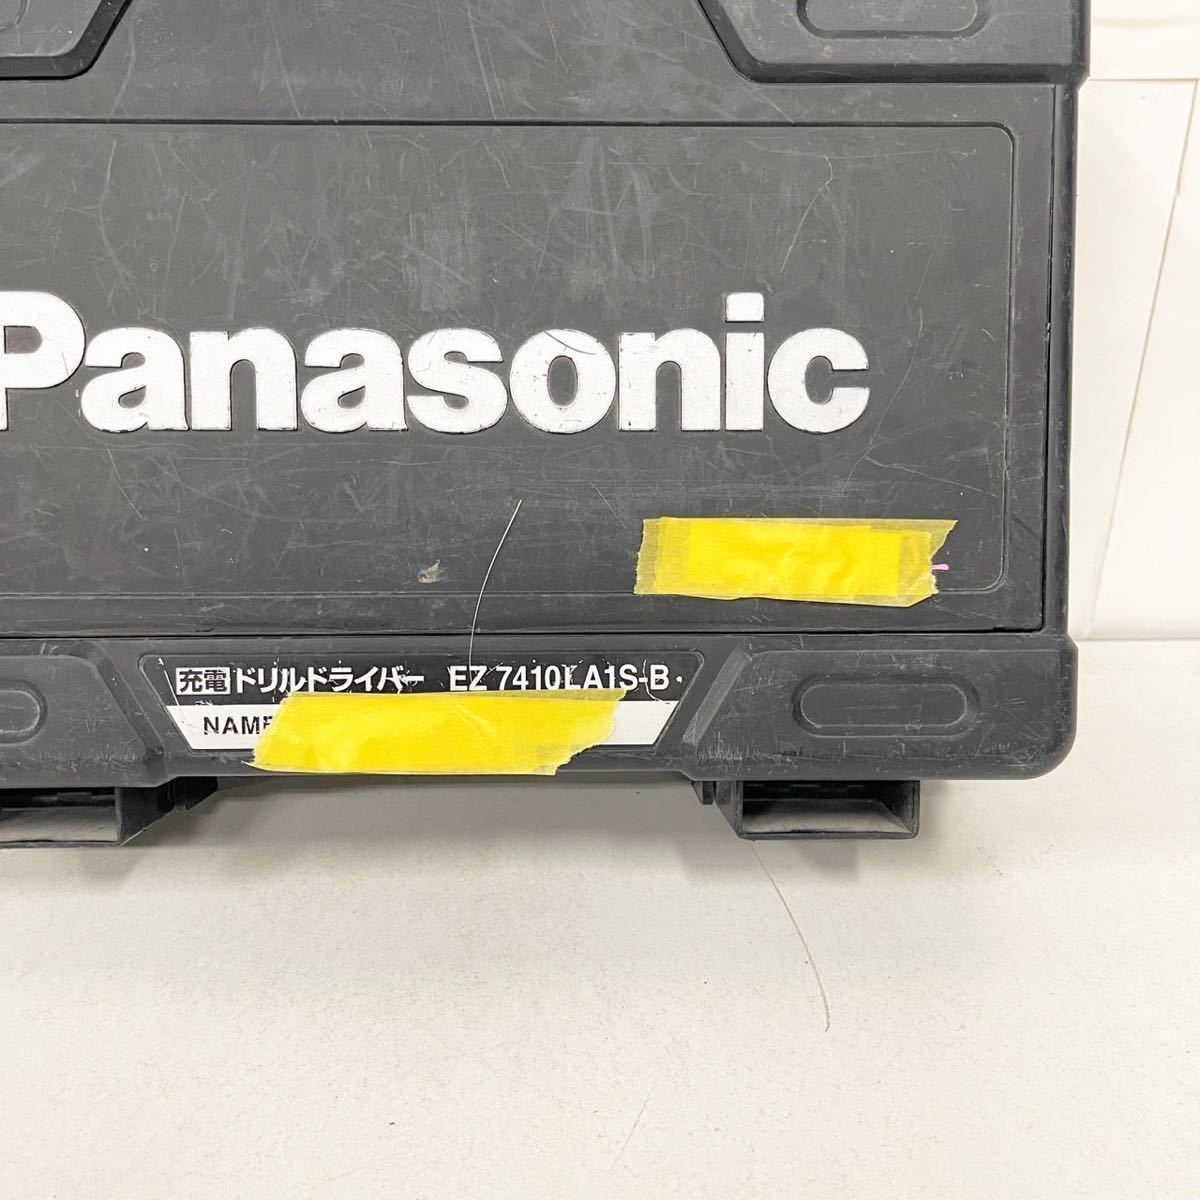 パナソニック Panasonic EZ7410 3.6V 充電 ドリルドライバー ペン型 電